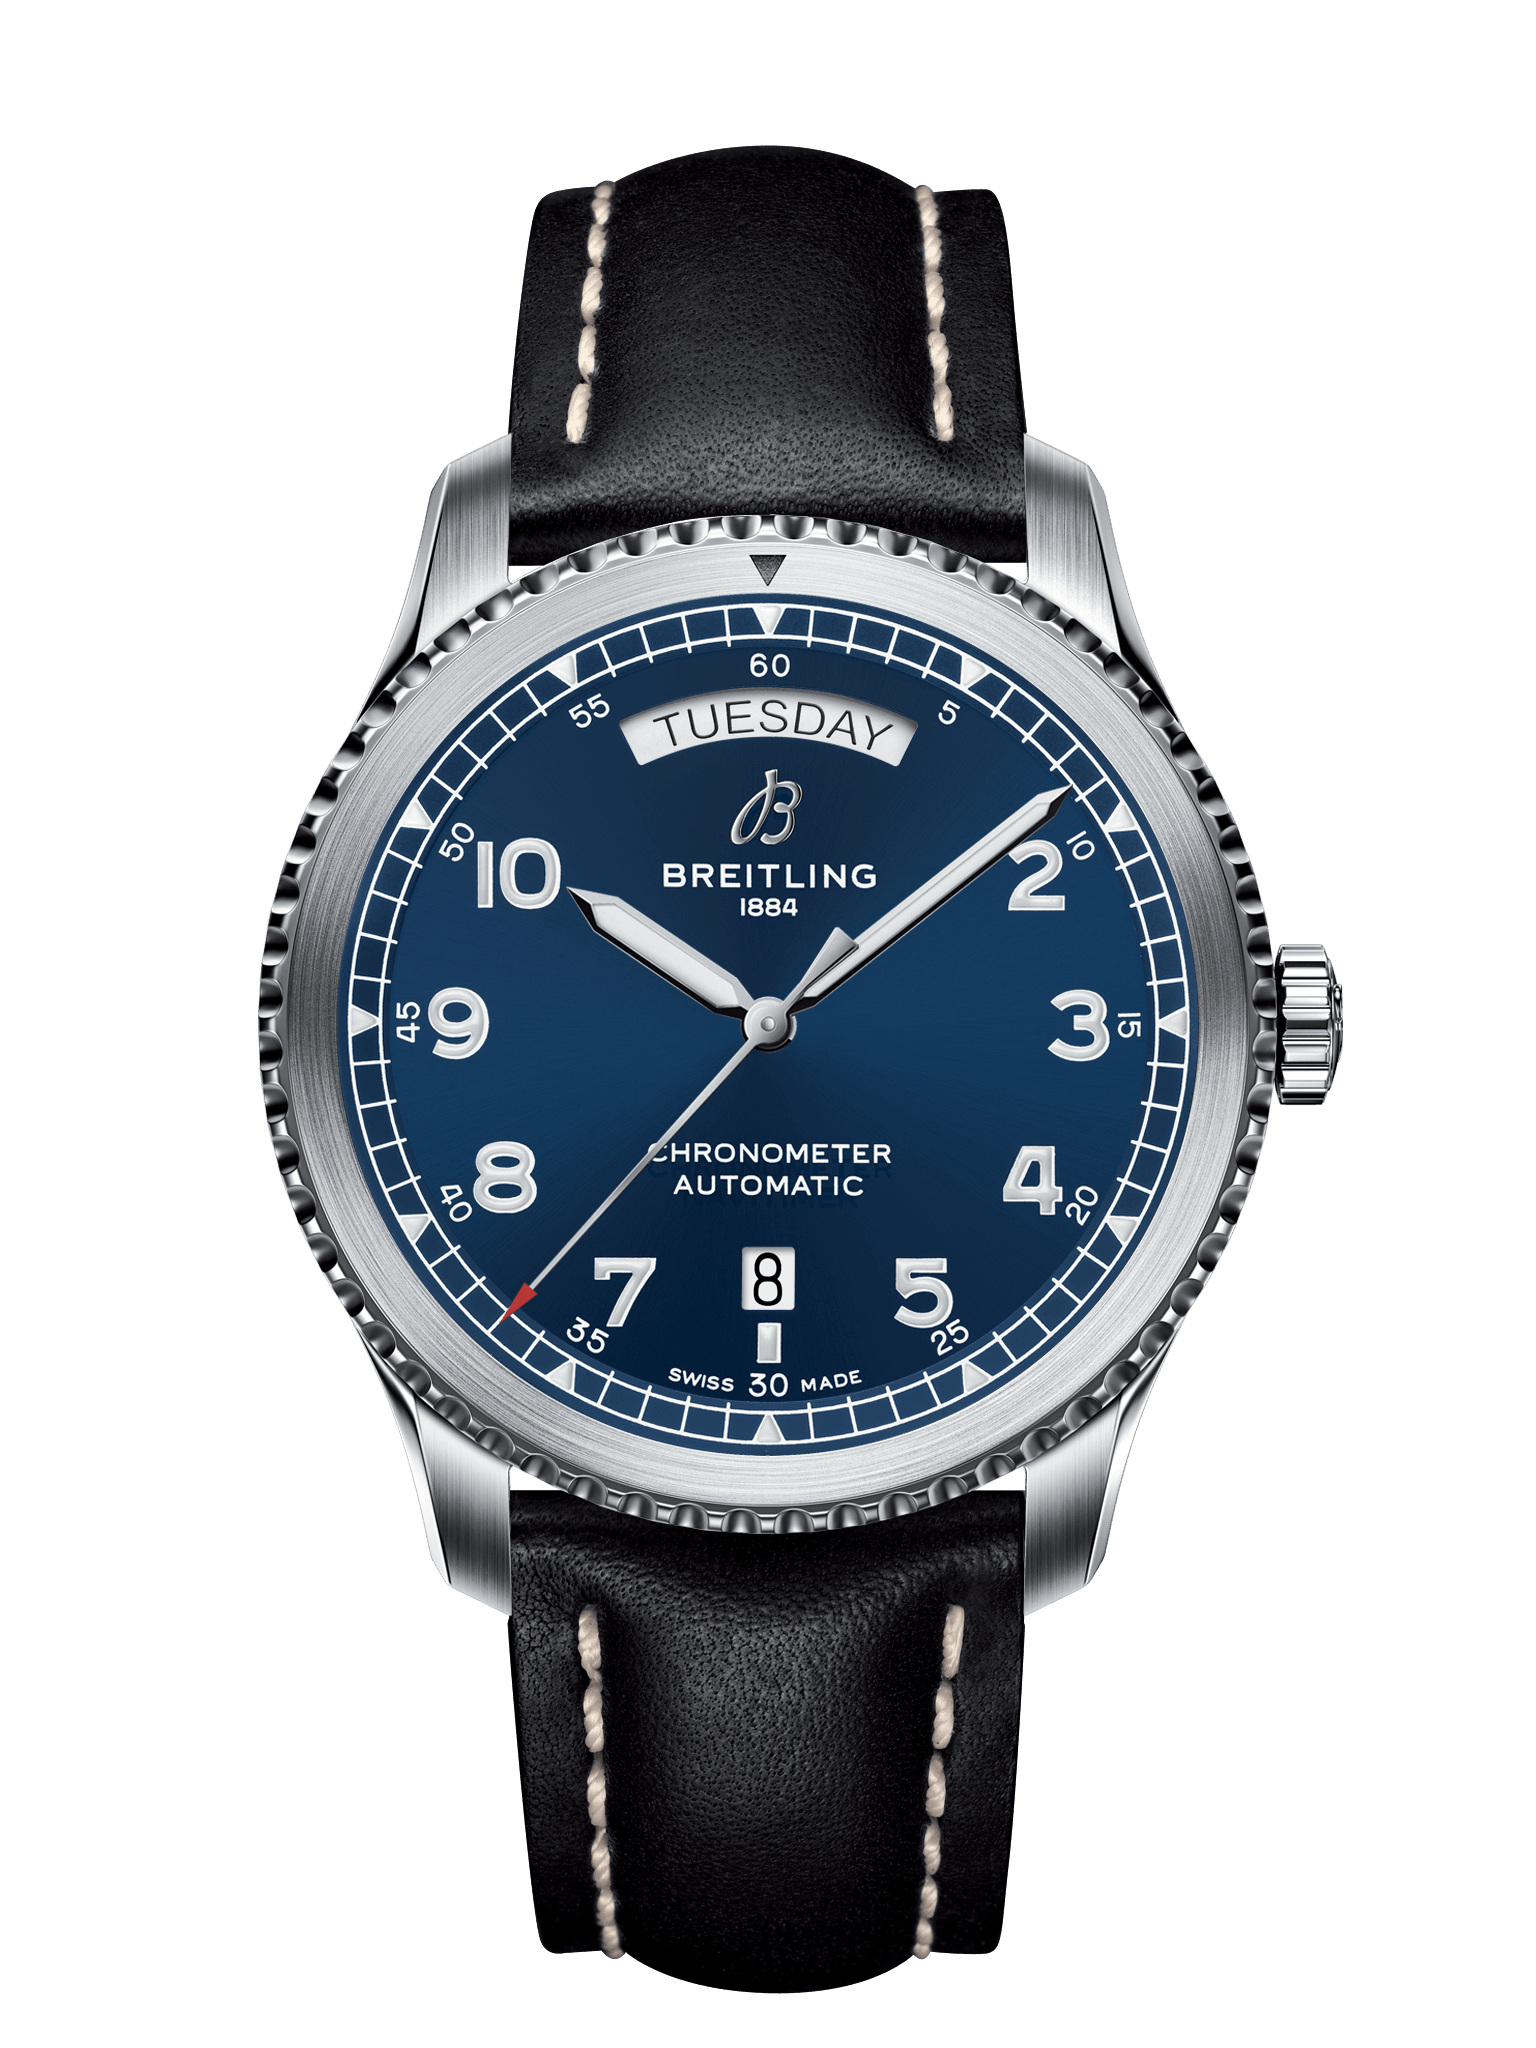 Breitling Super Ocean Heritage 46 mmbreitling Super Ocean Heritage 46 mm black dial steel man watch A17320